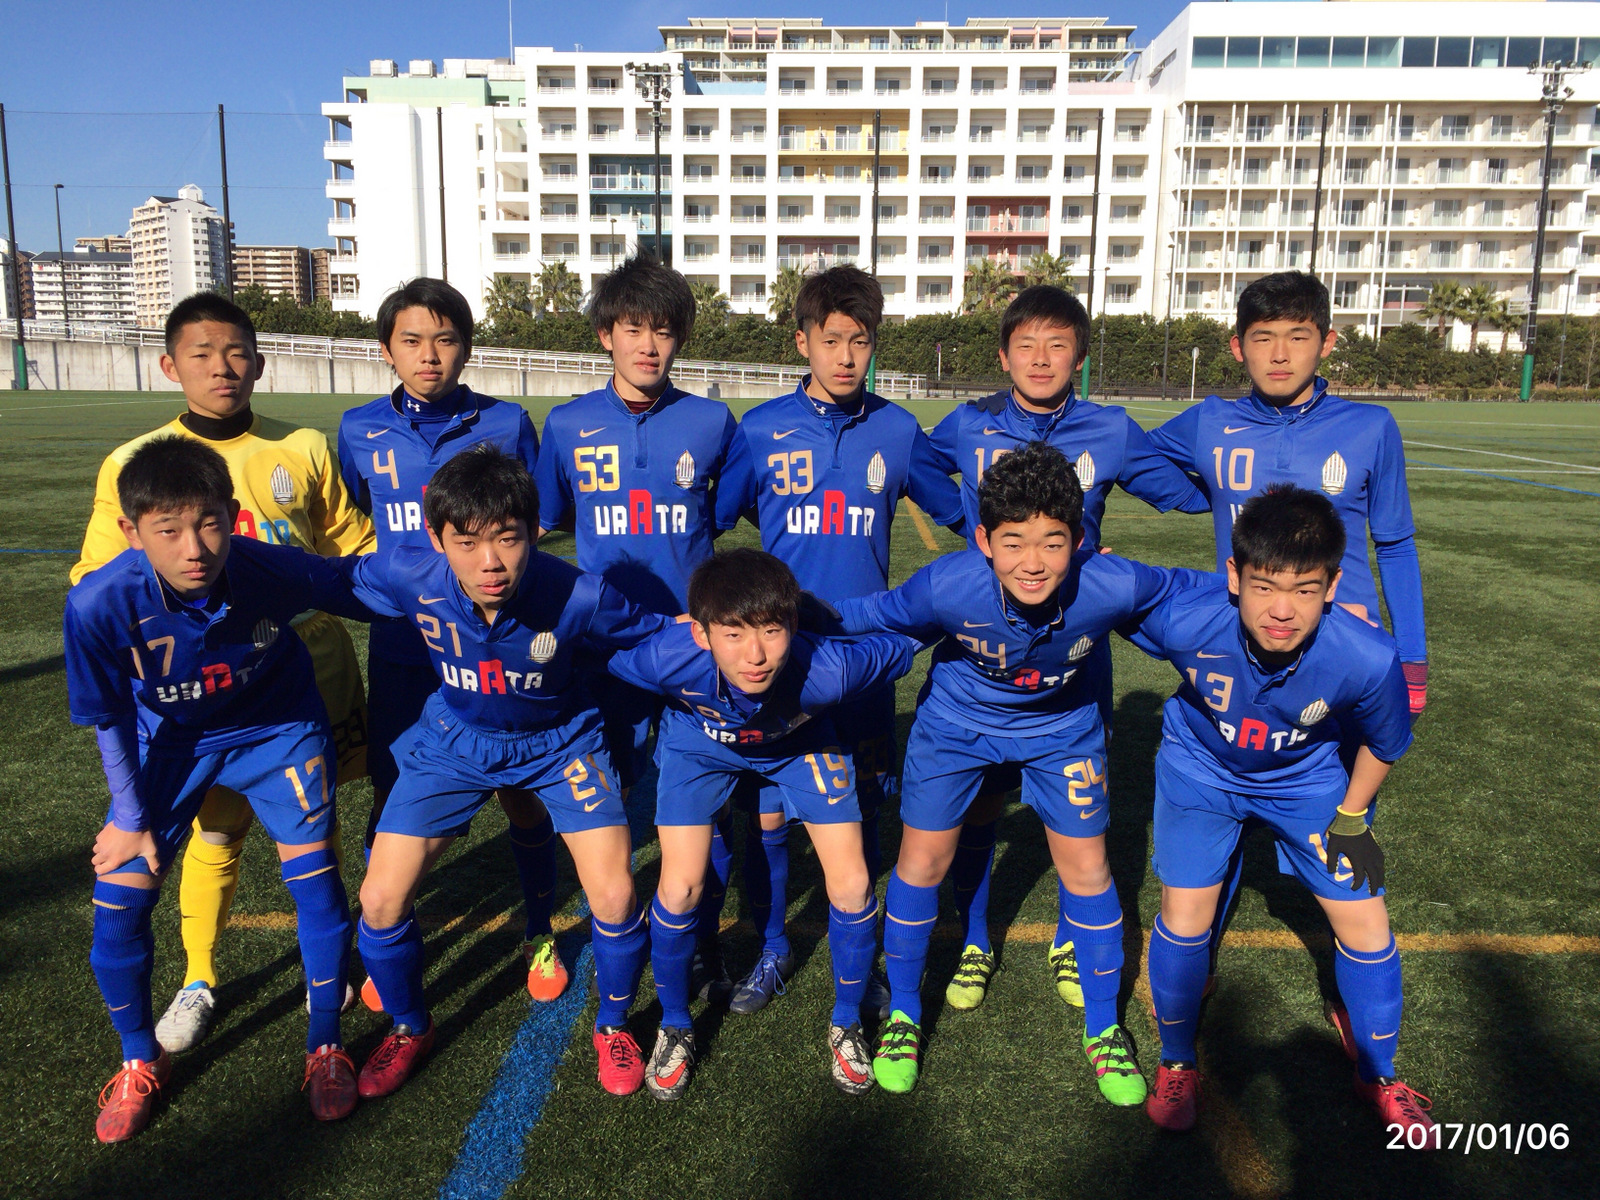 【U18】KCYリーグ1次予選 第2節結果【公式戦】